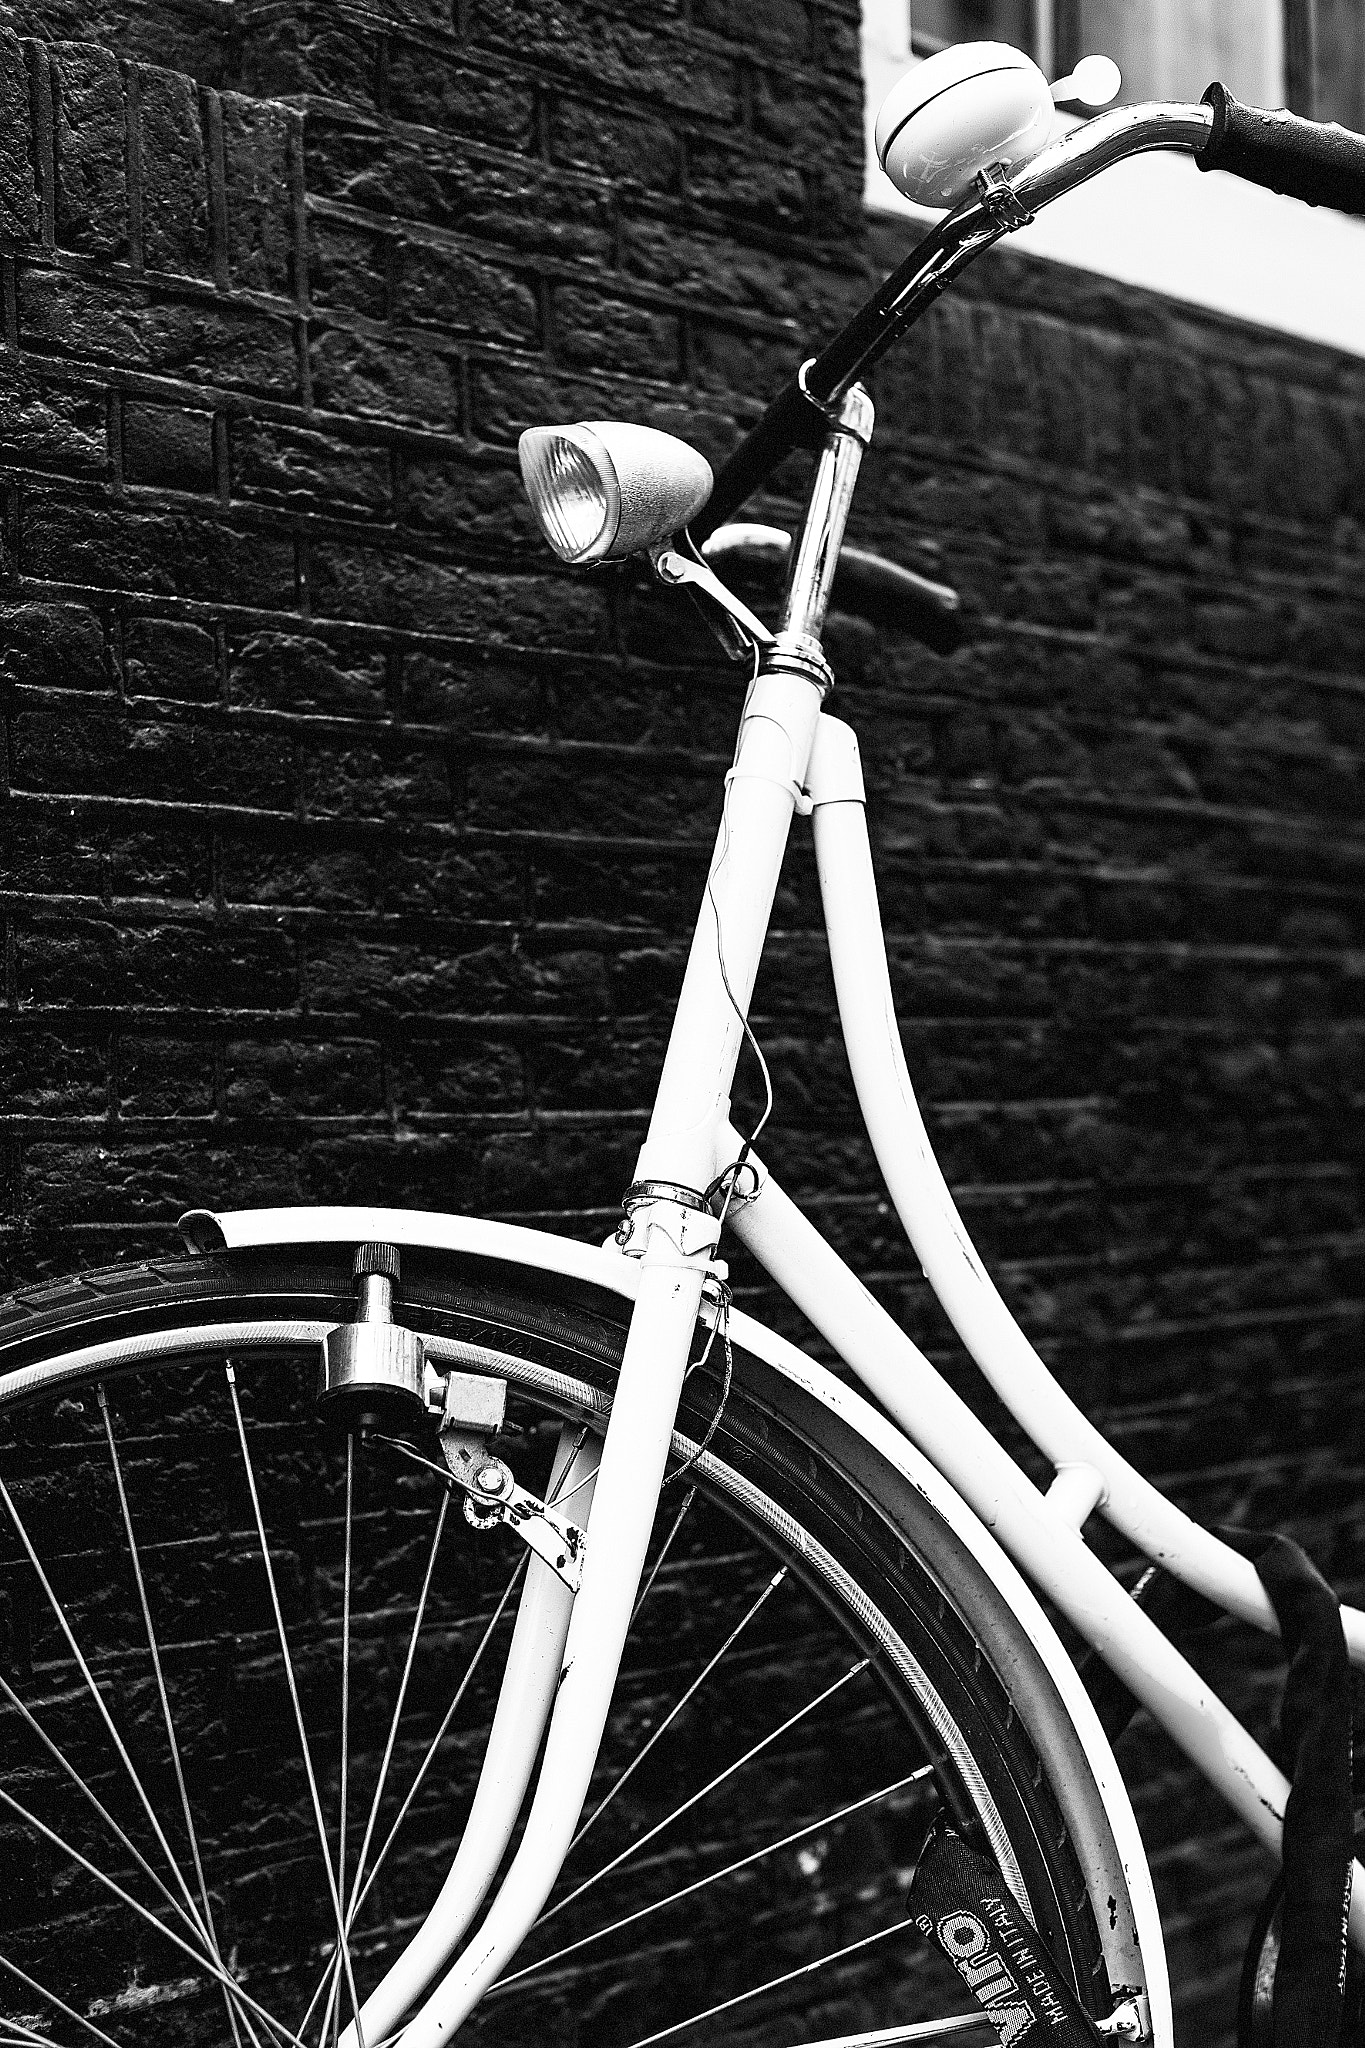 Nikon D600 + Nikon AF Nikkor 50mm F1.4D sample photo. Amsterdam streets - bike, bike, bike photography